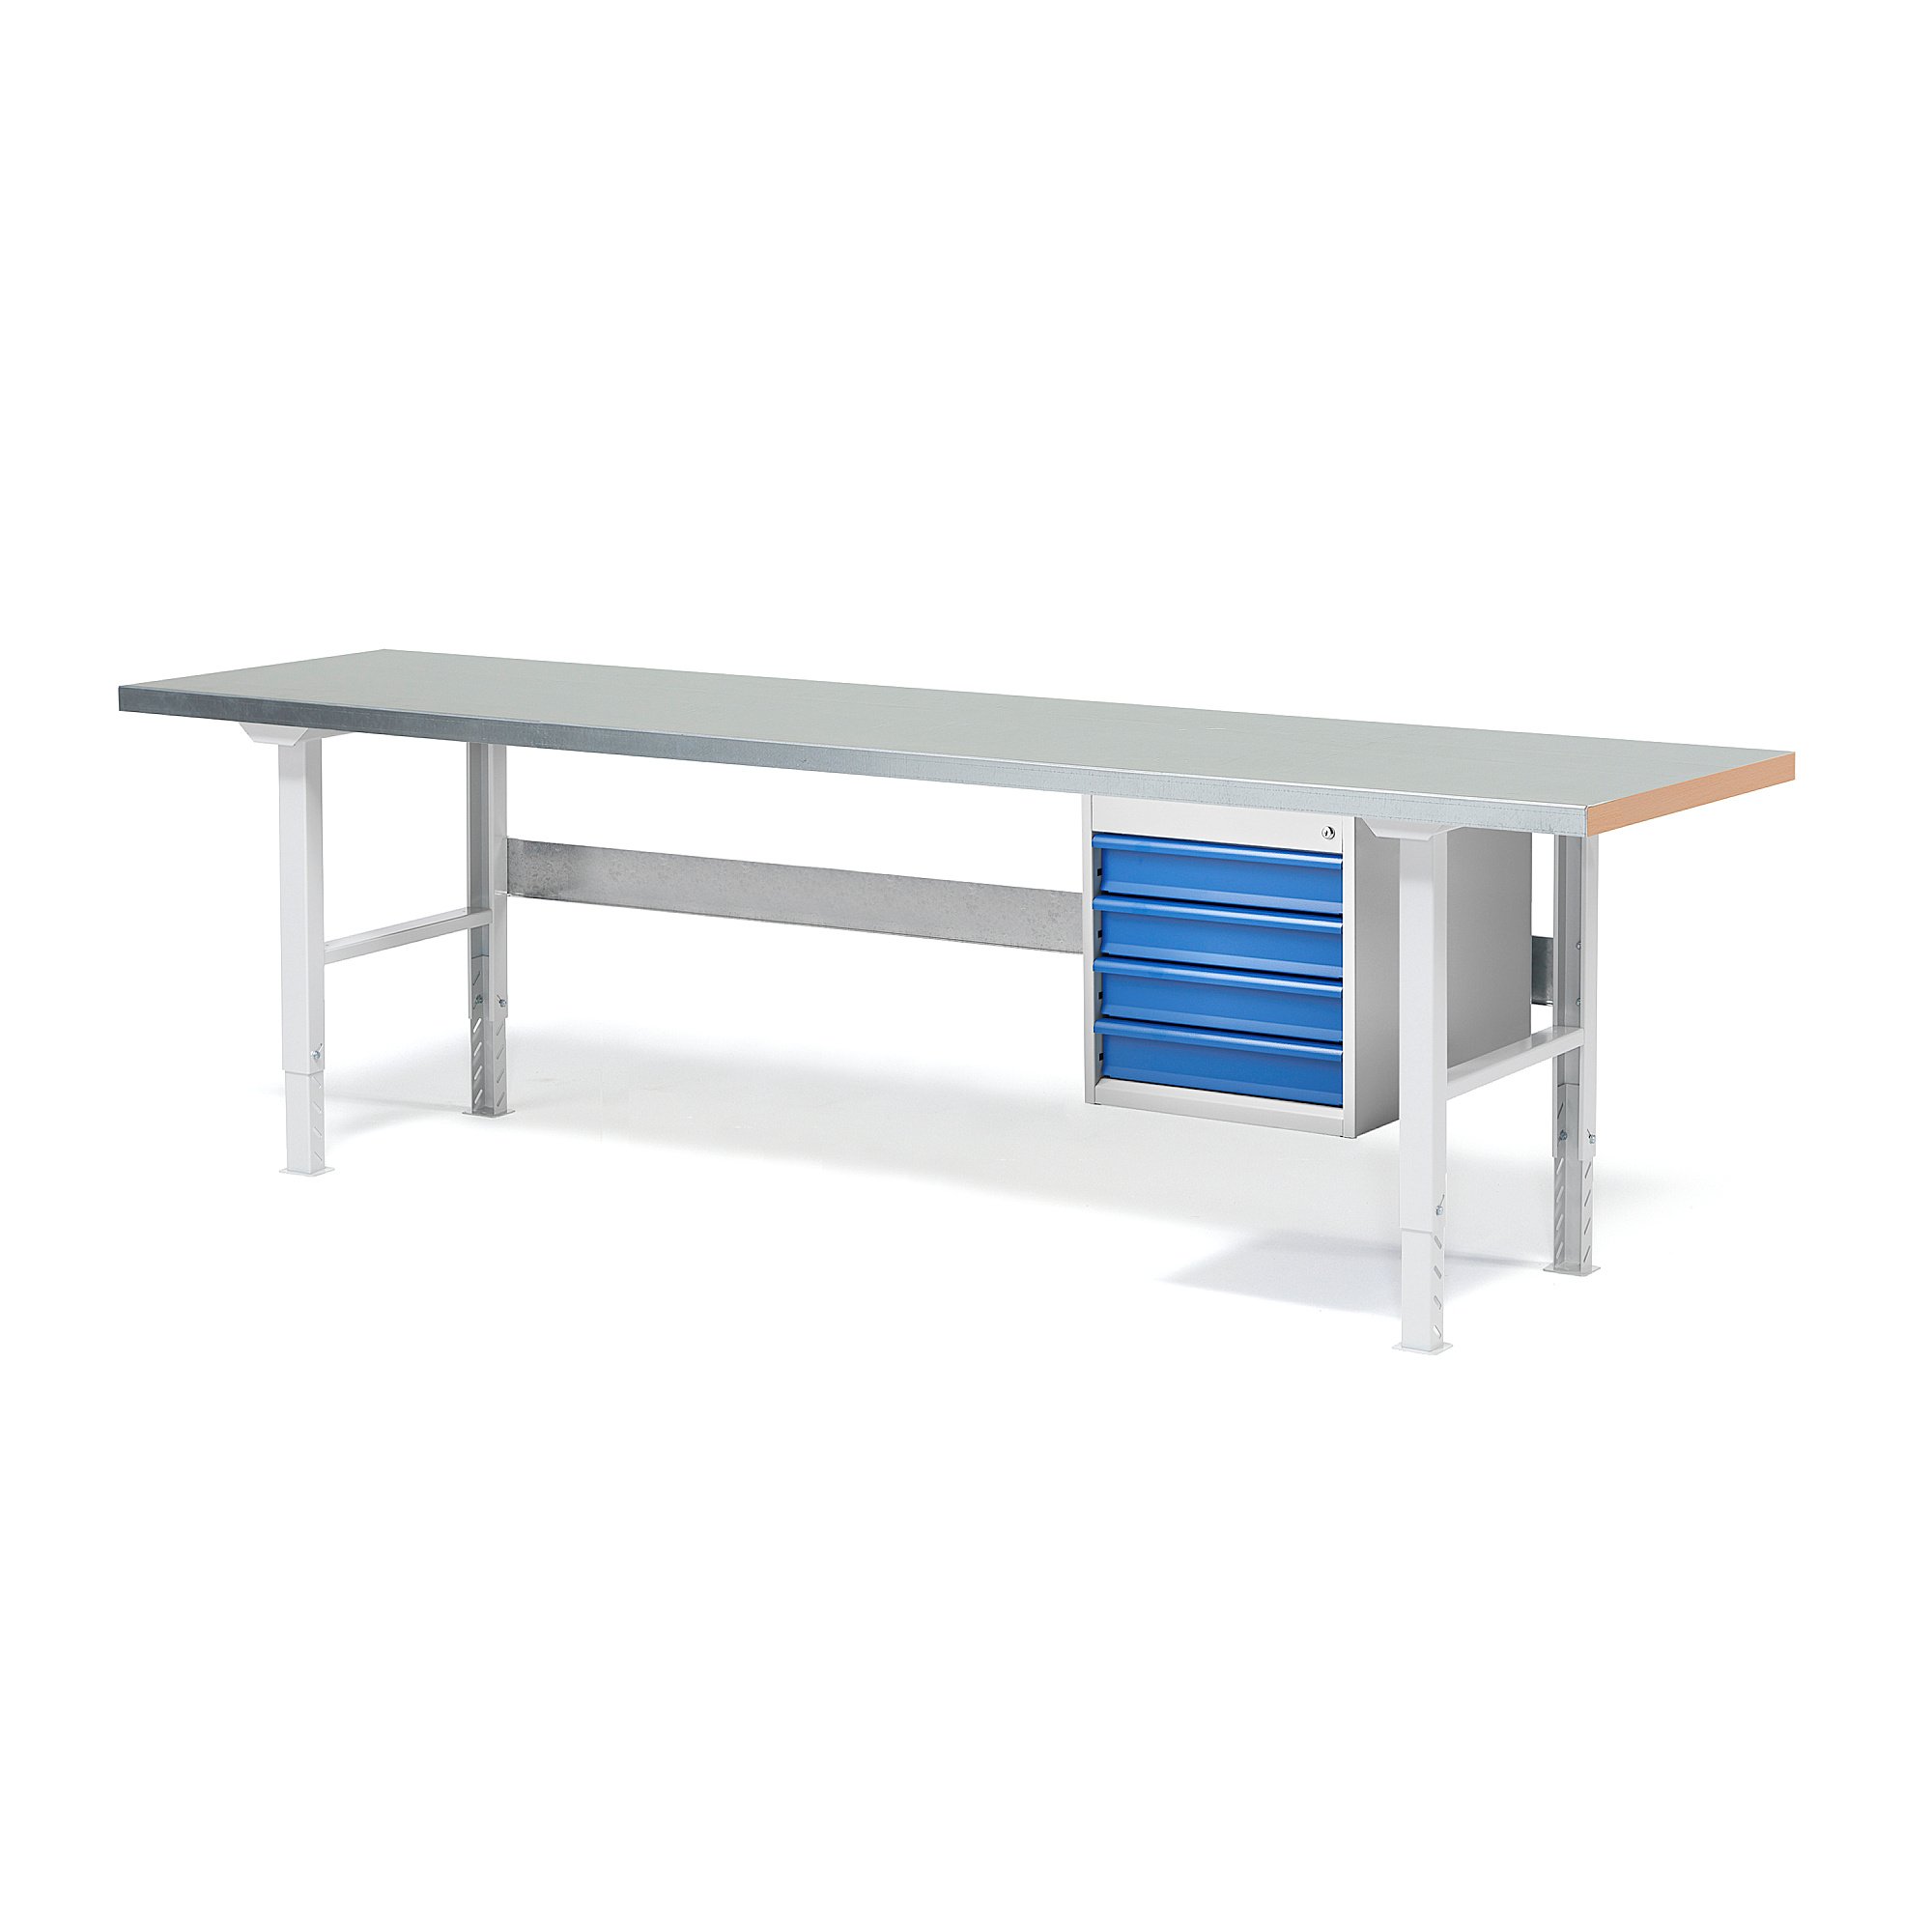 Dílenský stůl SOLID, 2500x800 mm, nosnost 750 kg, 4 zásuvky, ocelový povrch